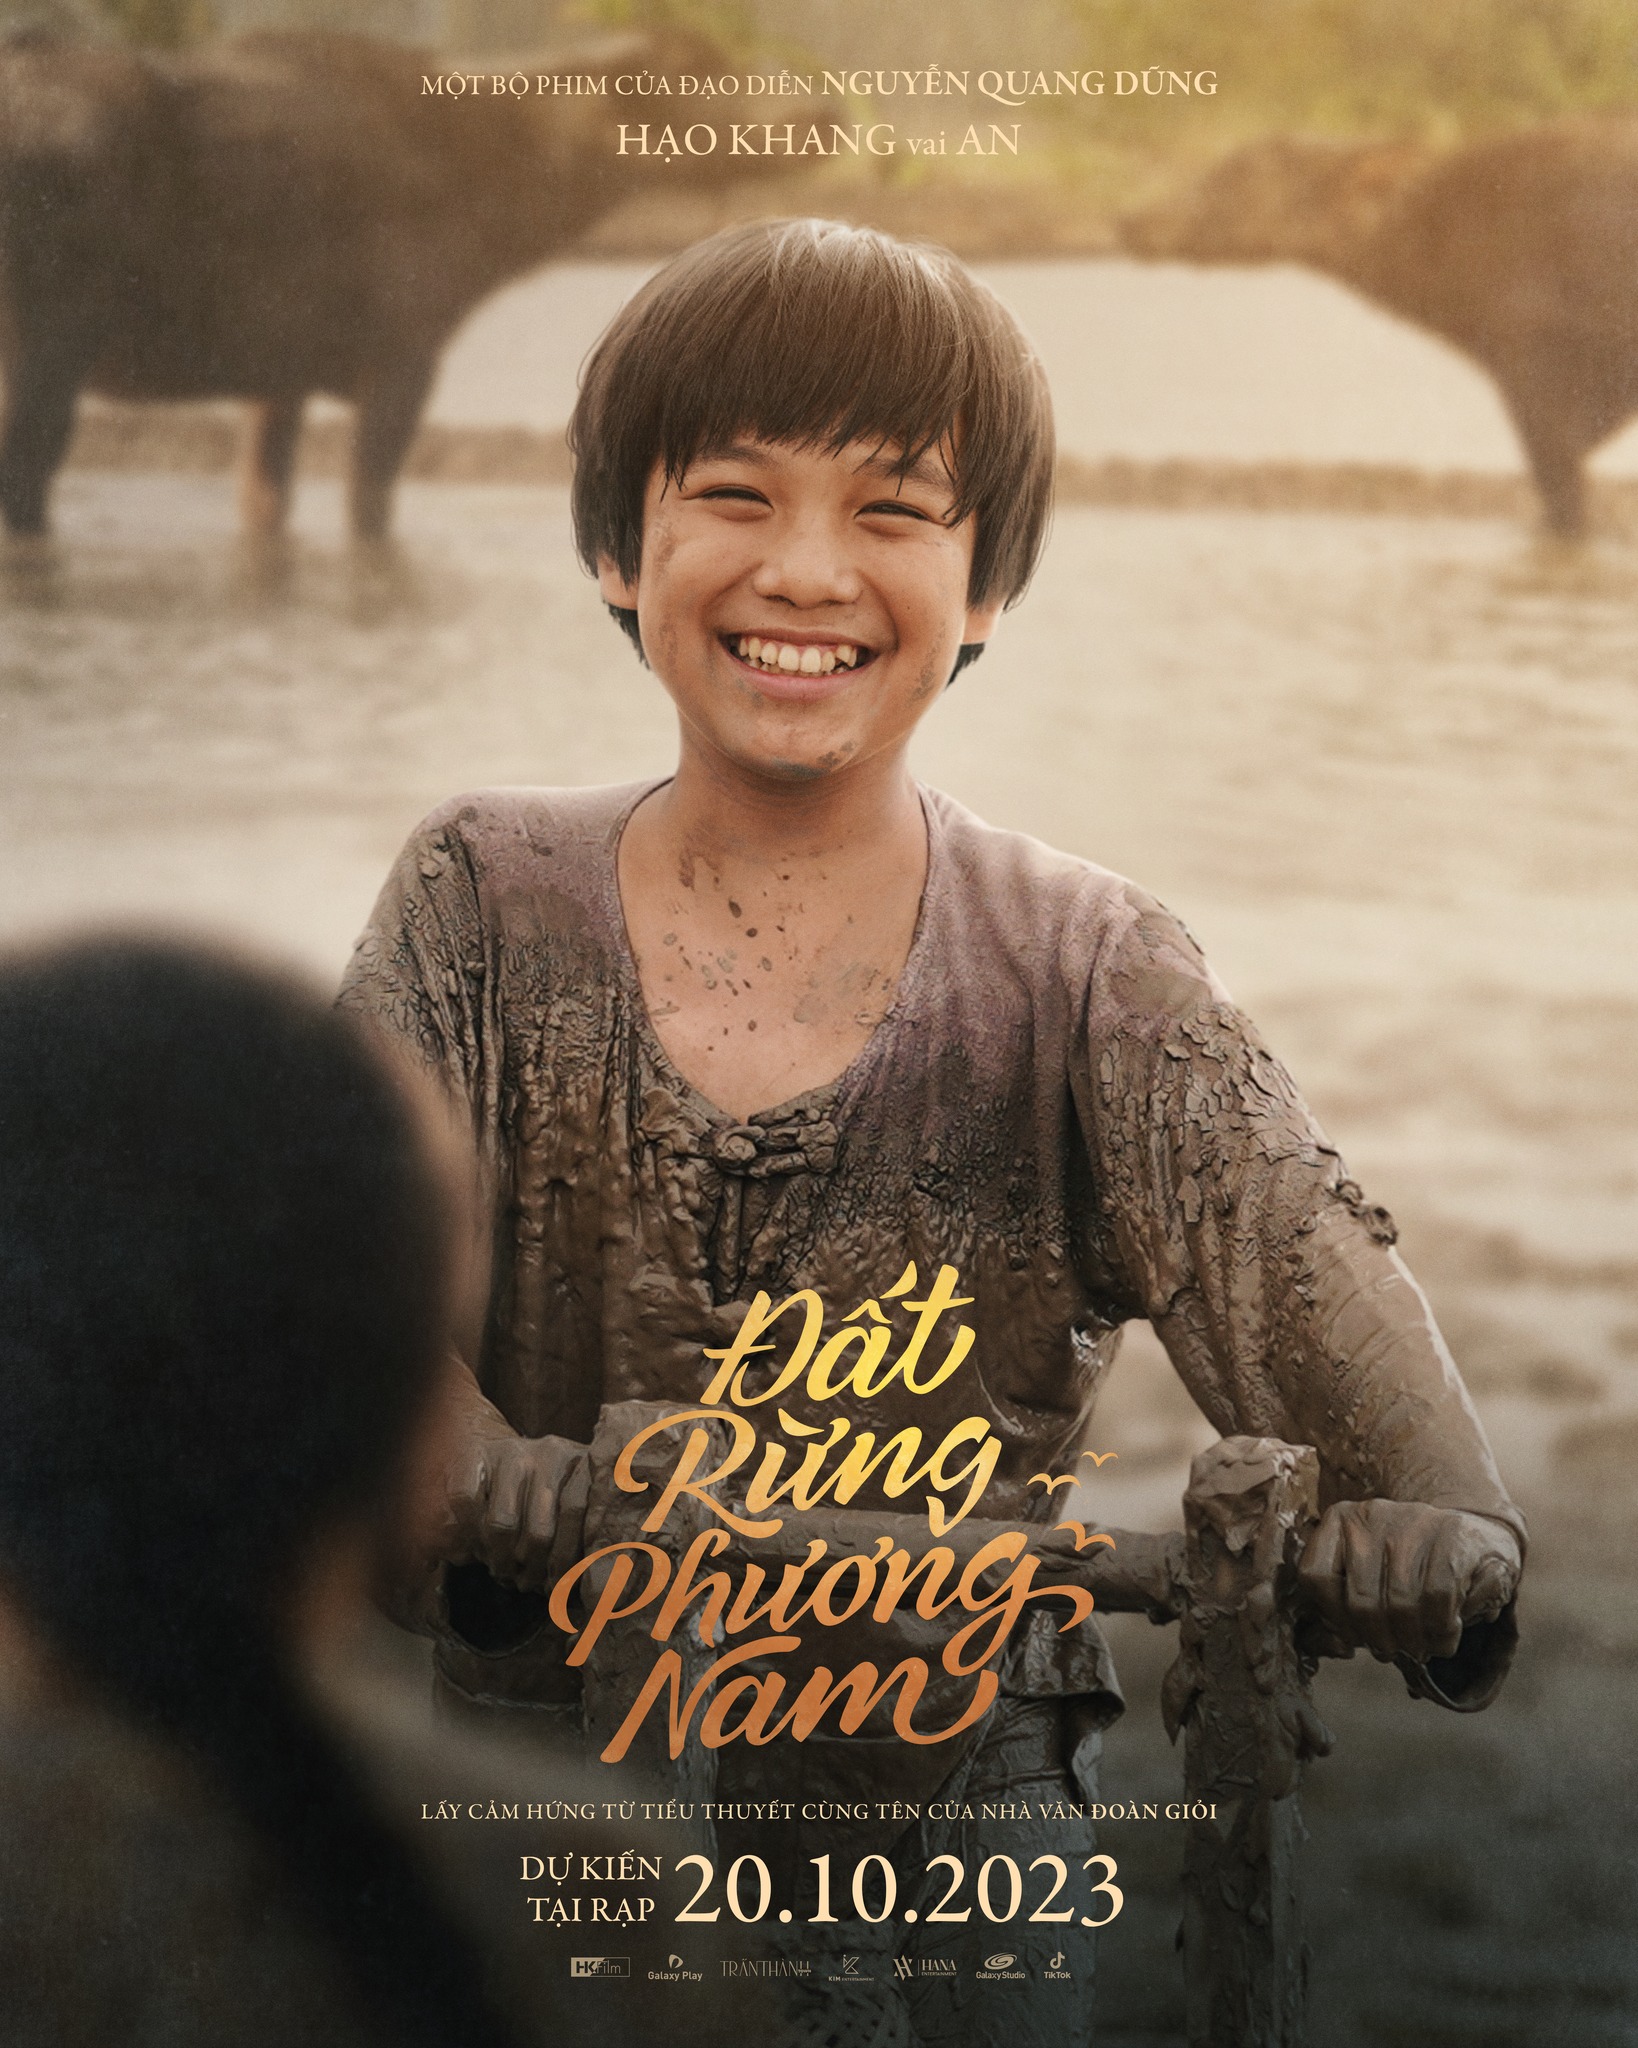 Đây được xem là bộ phim đầu tiên diễn viên nhí Hạo Khang tham gia